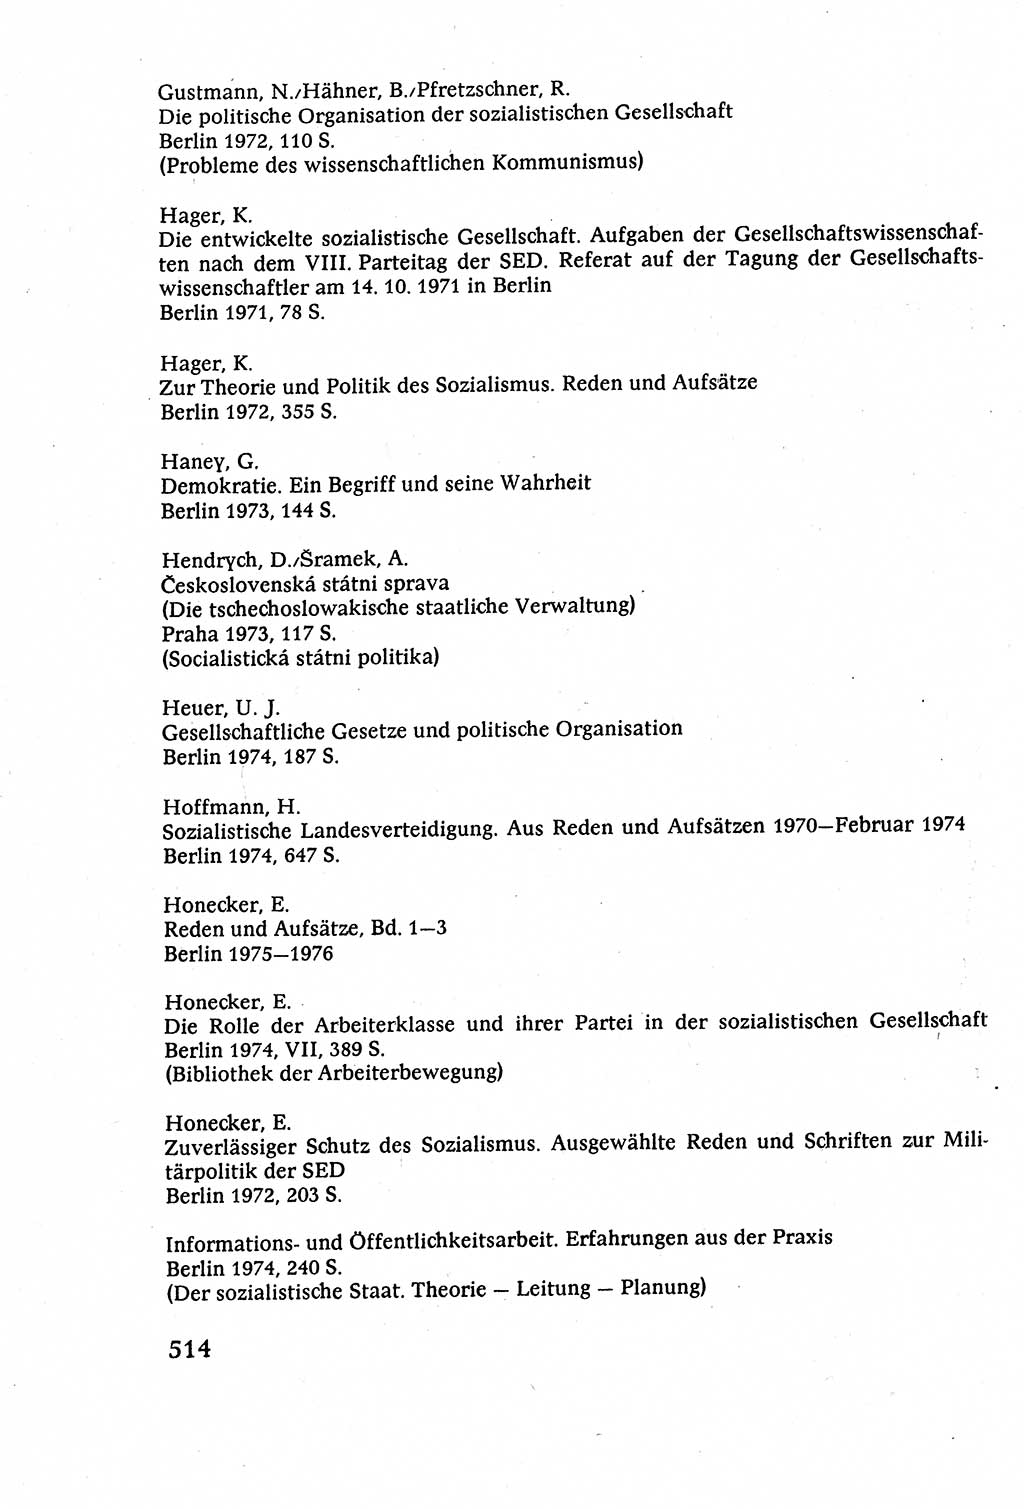 Staatsrecht der DDR (Deutsche Demokratische Republik), Lehrbuch 1977, Seite 514 (St.-R. DDR Lb. 1977, S. 514)